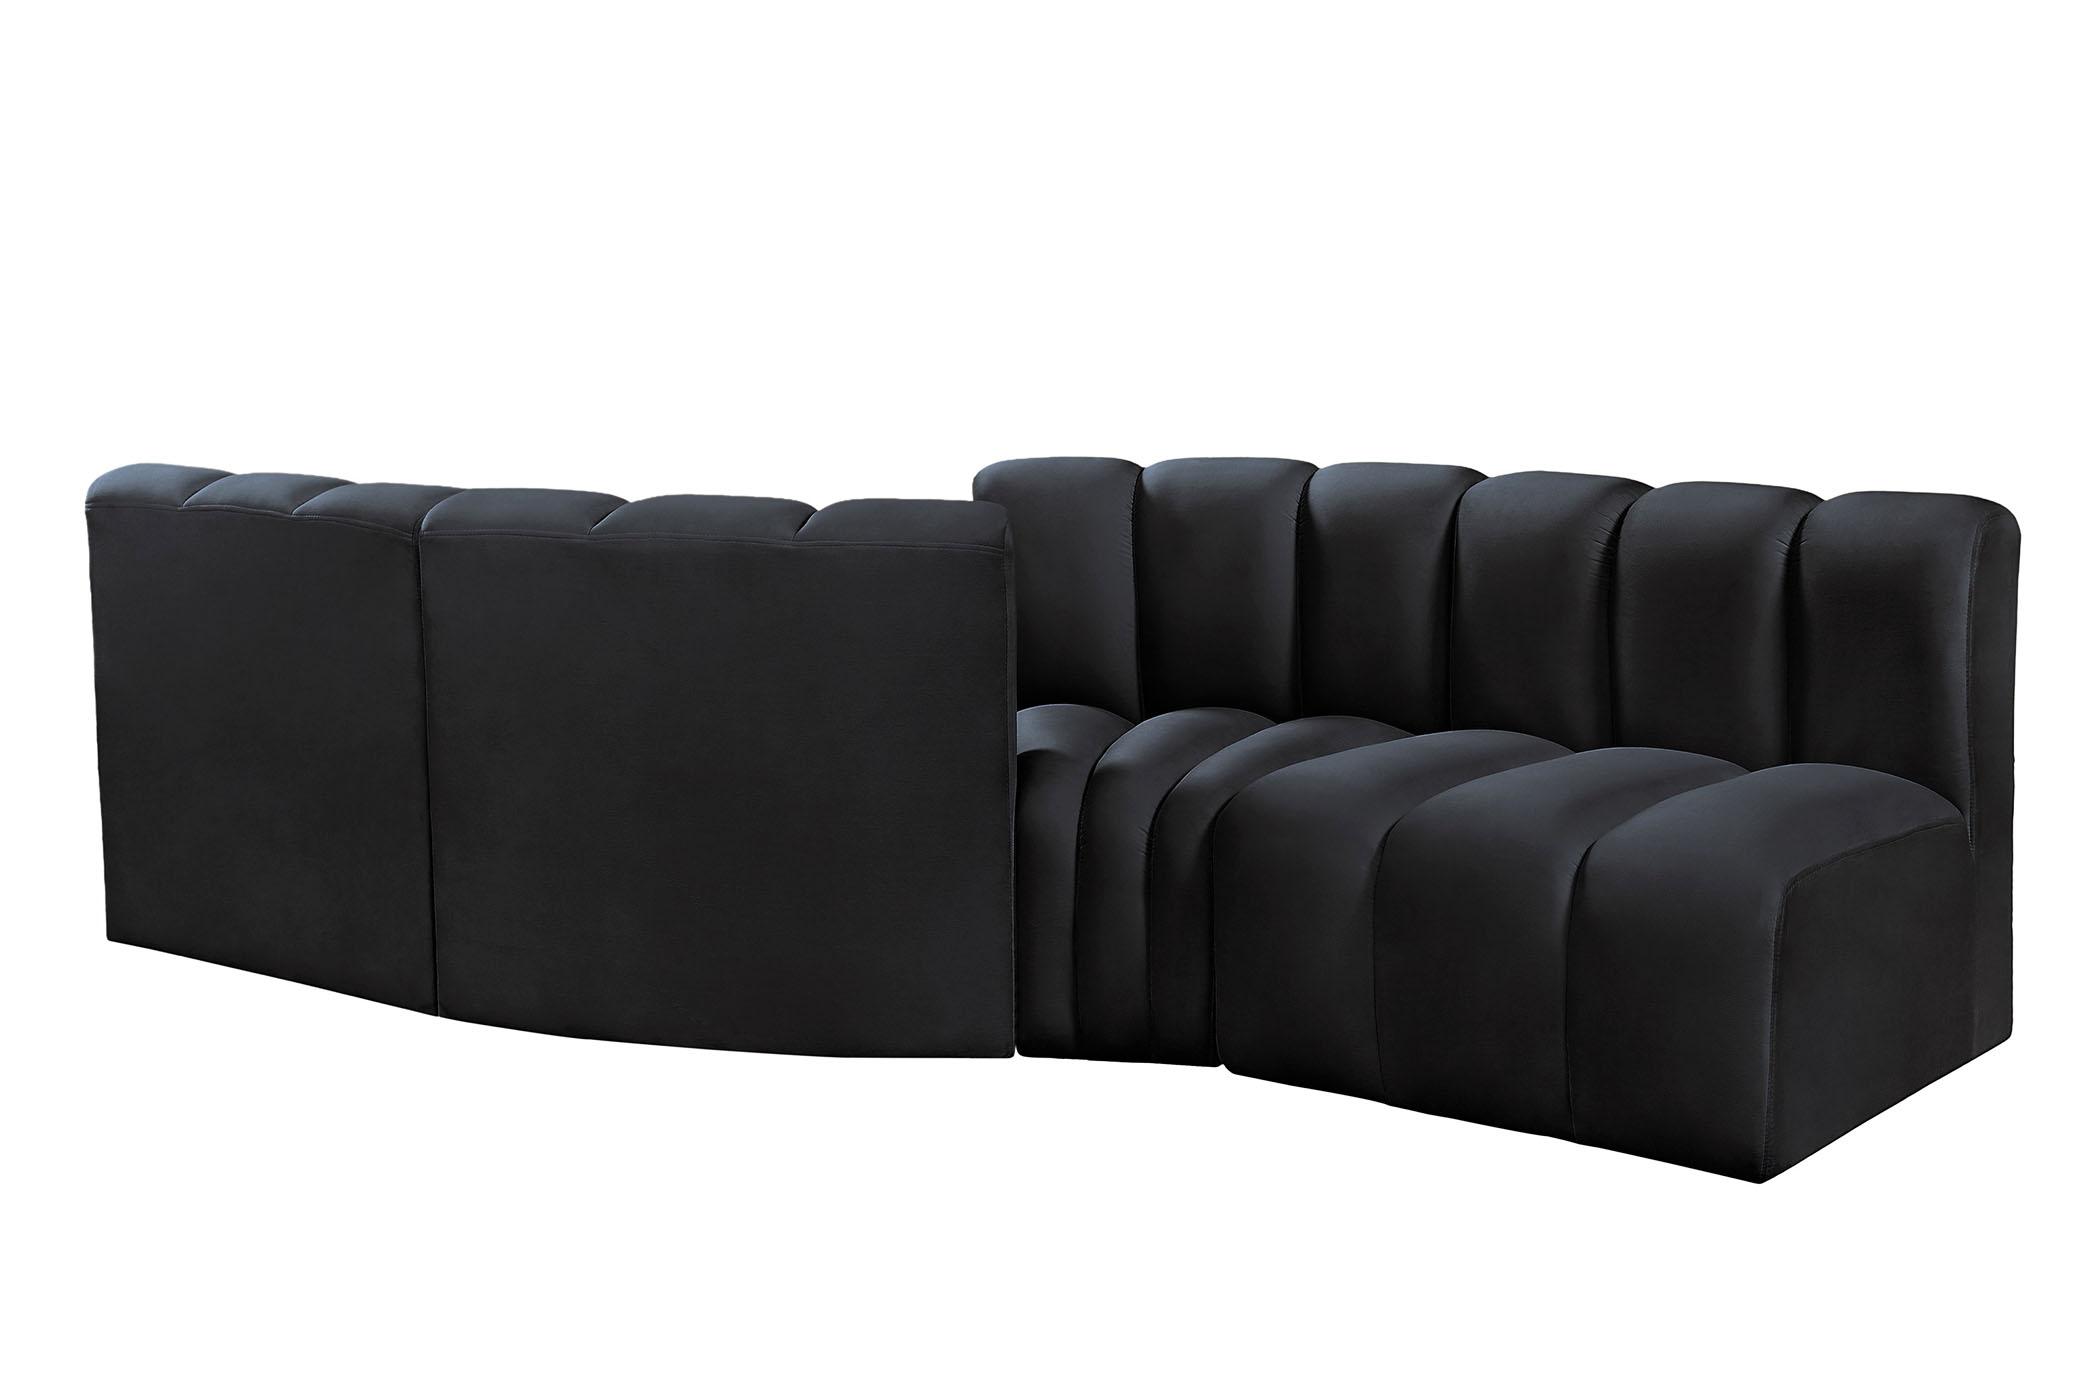 

    
103Black-S4A Meridian Furniture Modular Sectional Sofa
